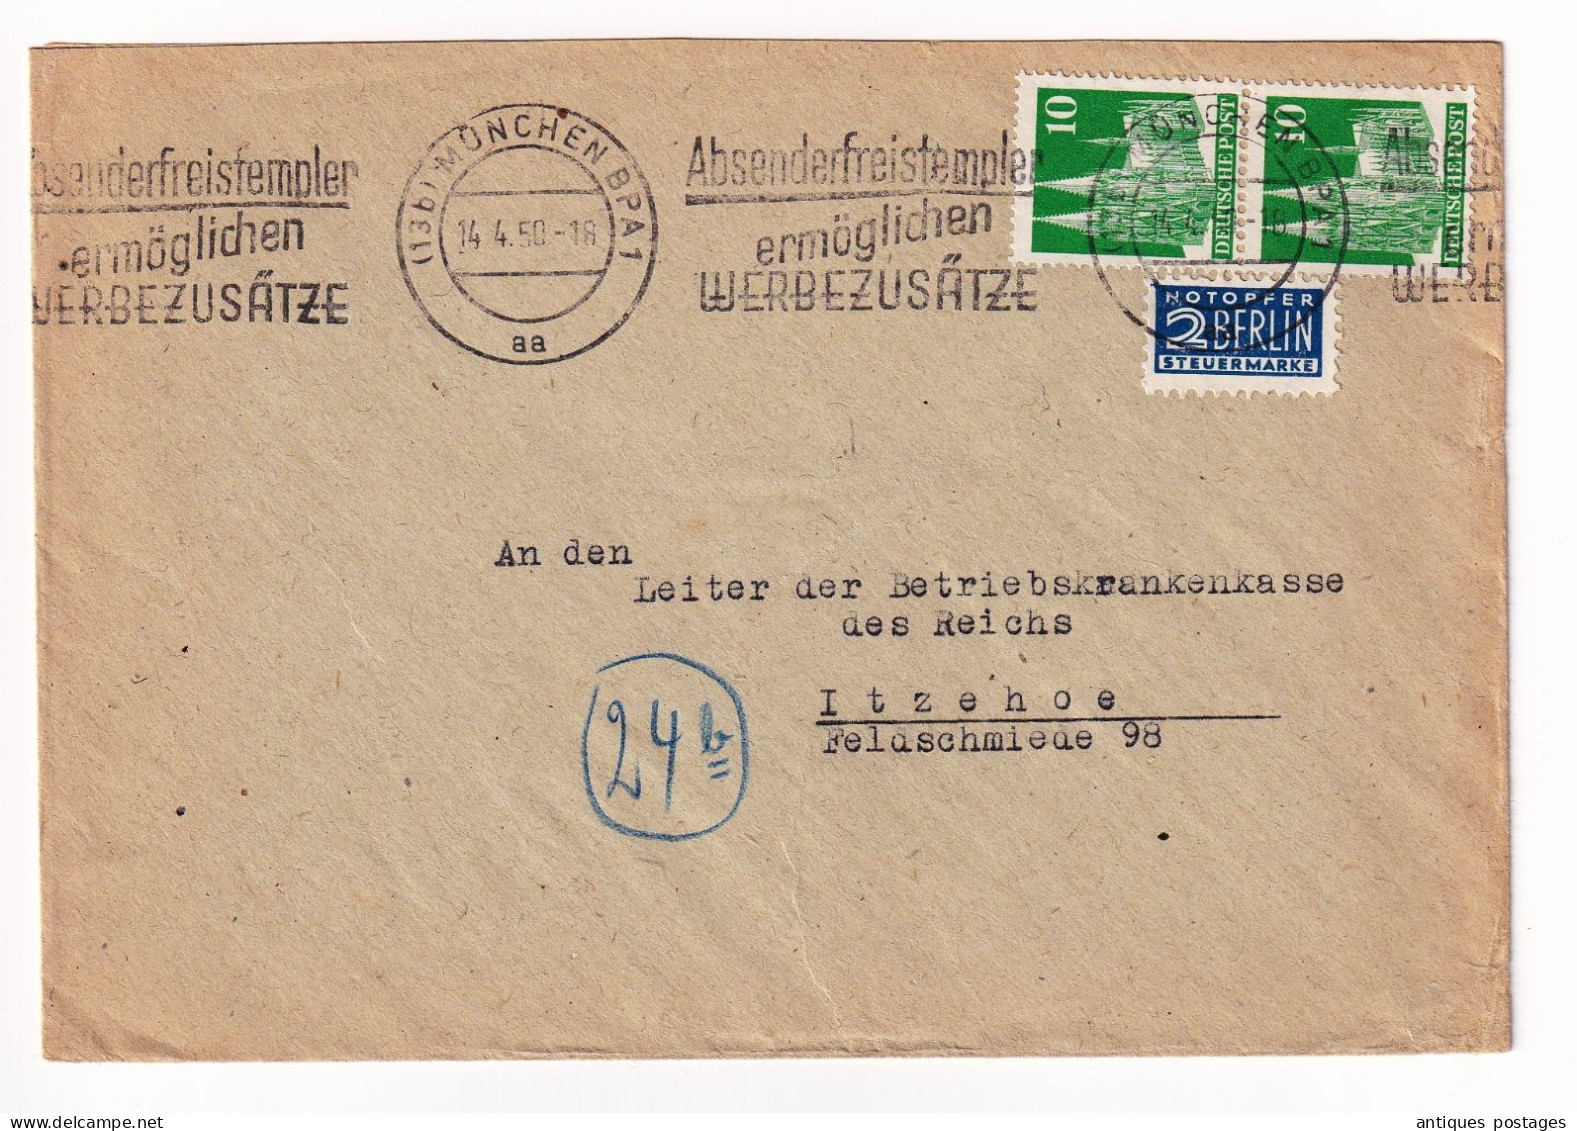 Lettre 1950 München Bayern Ursula Even Deutschland Itzehoe Absenderfreistempel Ermöglichen Werbezusätze - Lettres & Documents